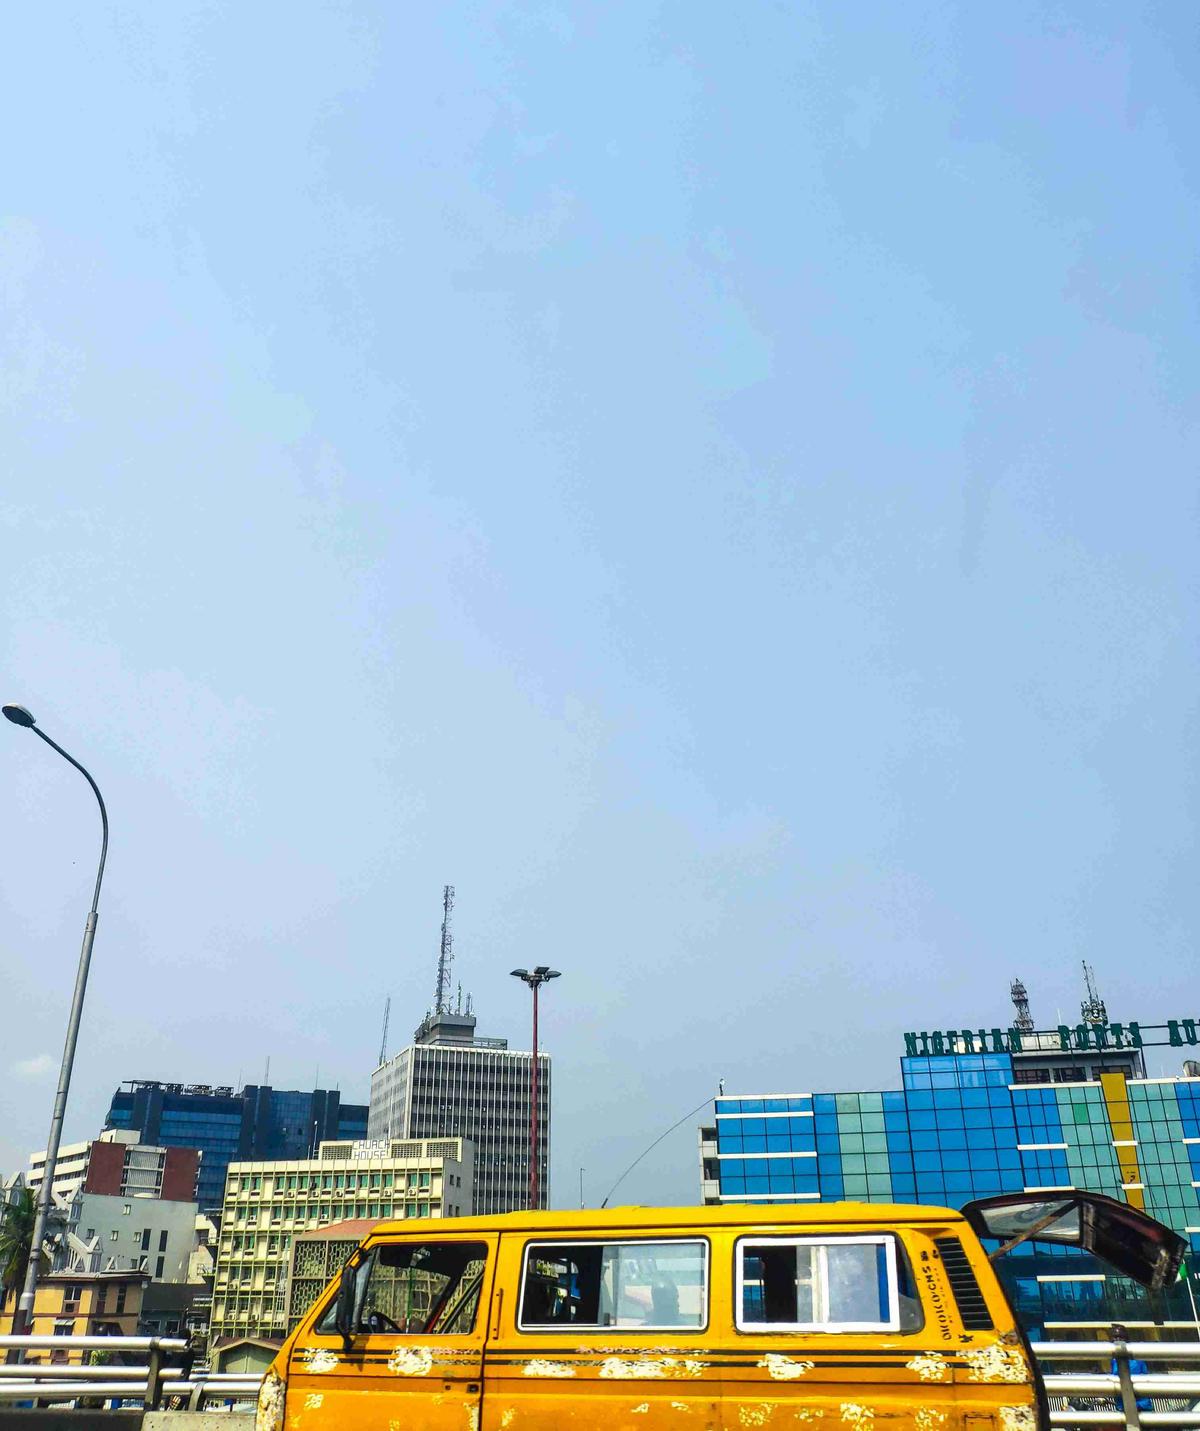 الحافلة الصفراء في منظر المدينة الحضري مع المباني الحديثة مقابل السماء الصافية